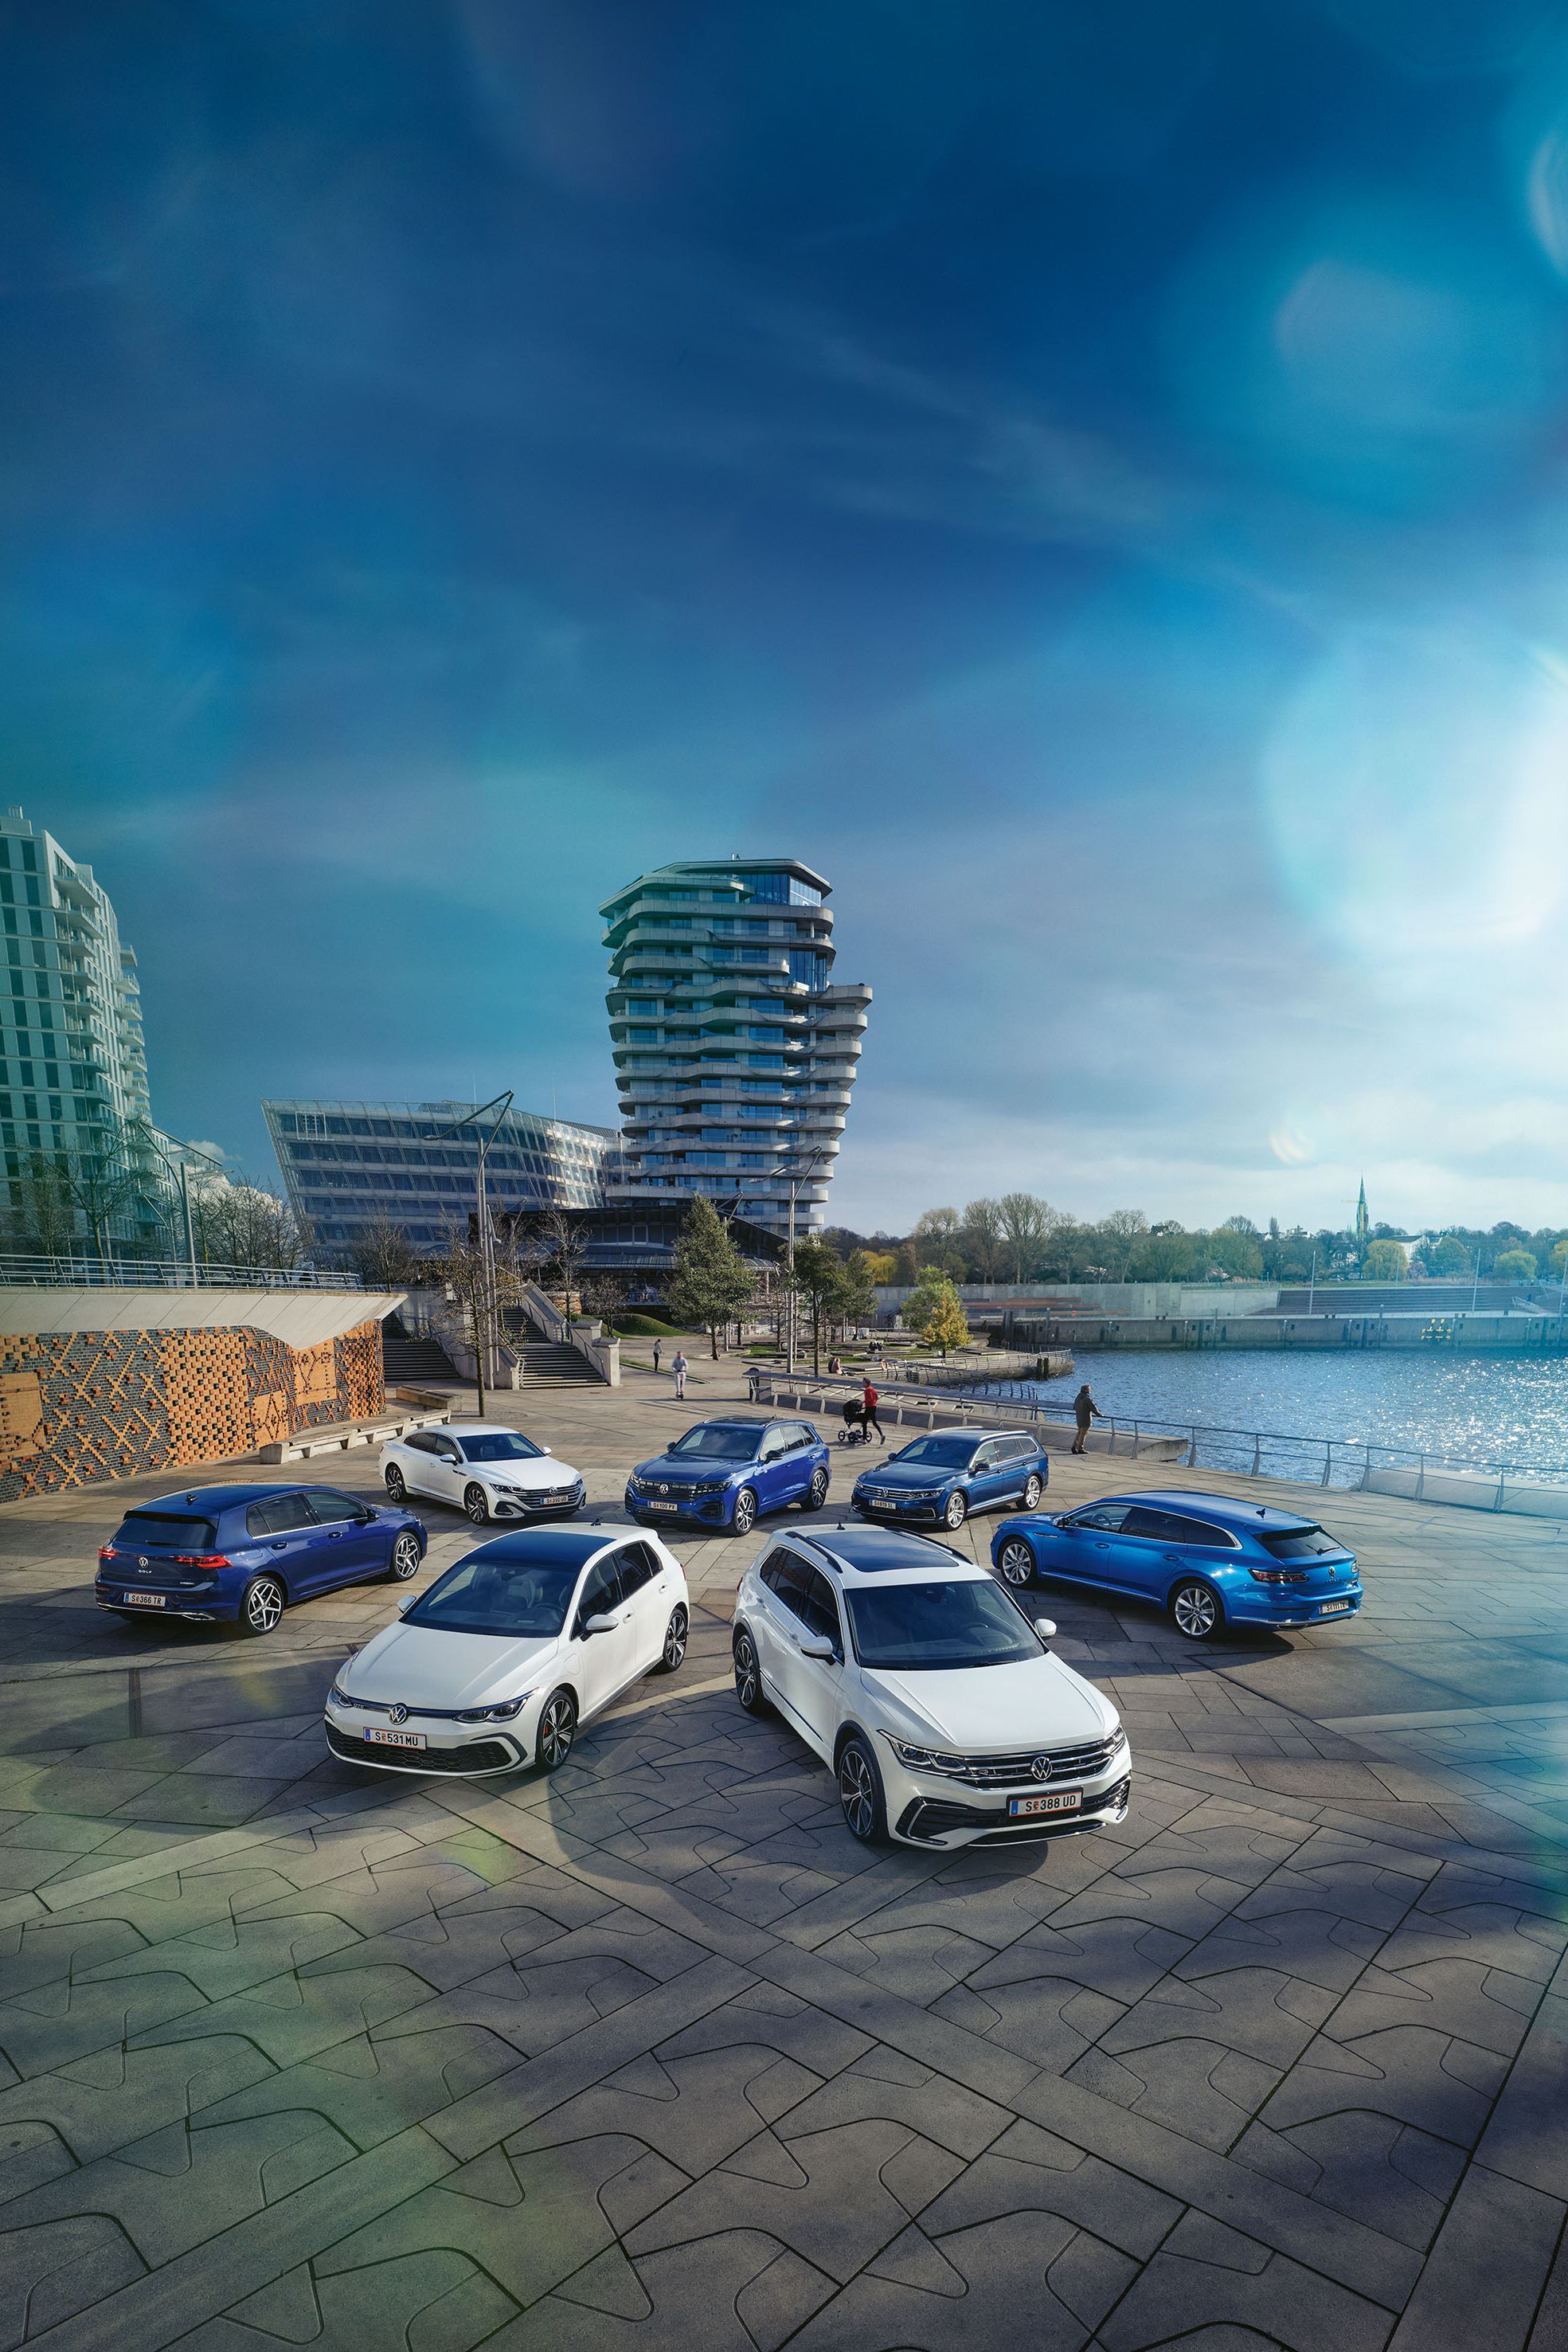 7 VW Hybridautos geparkt am Hafen